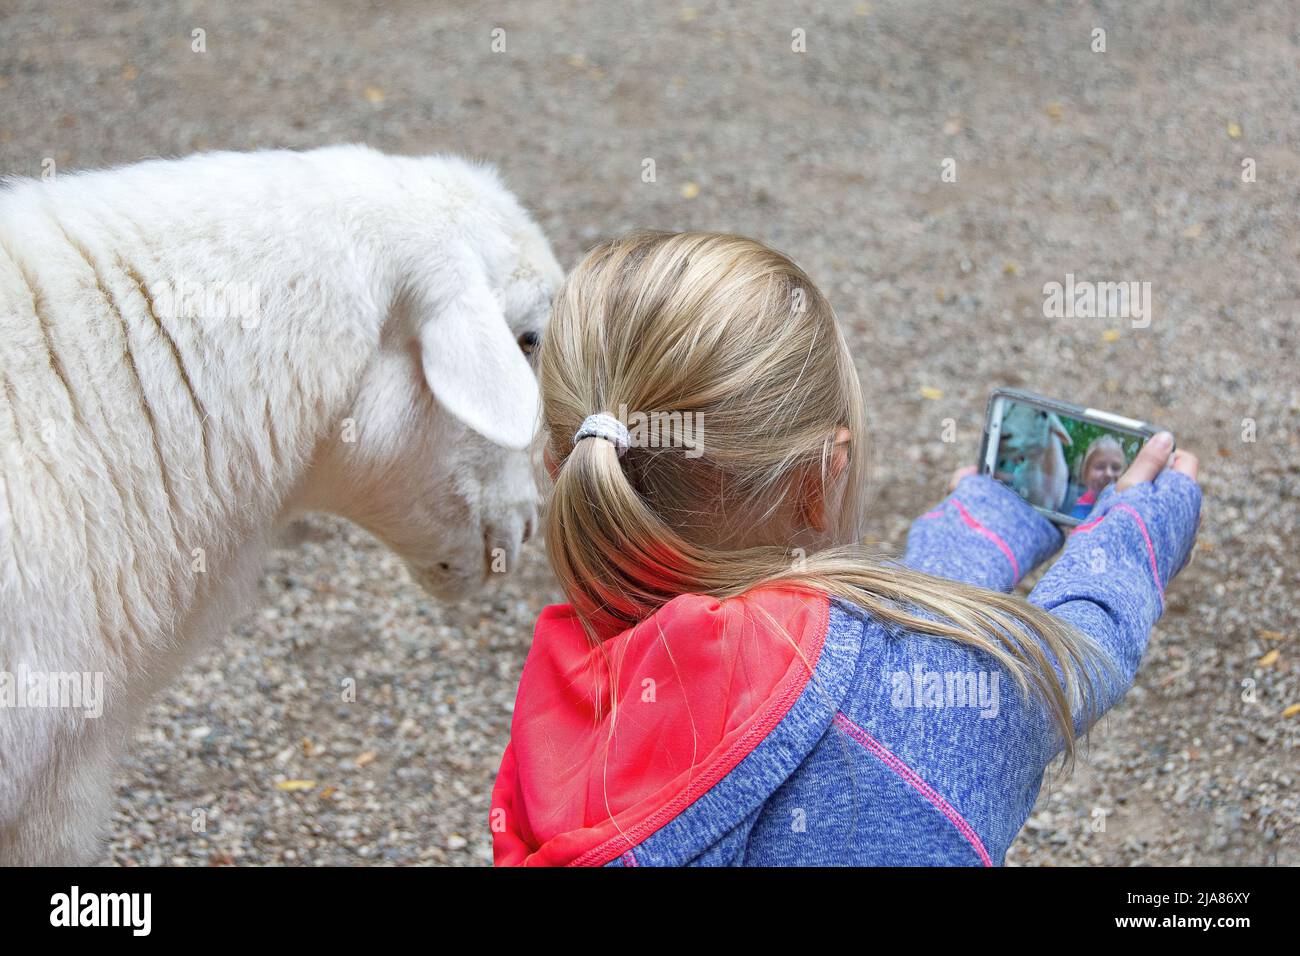 Joven rubia tomando una selfie con una cabra blanca Foto de stock